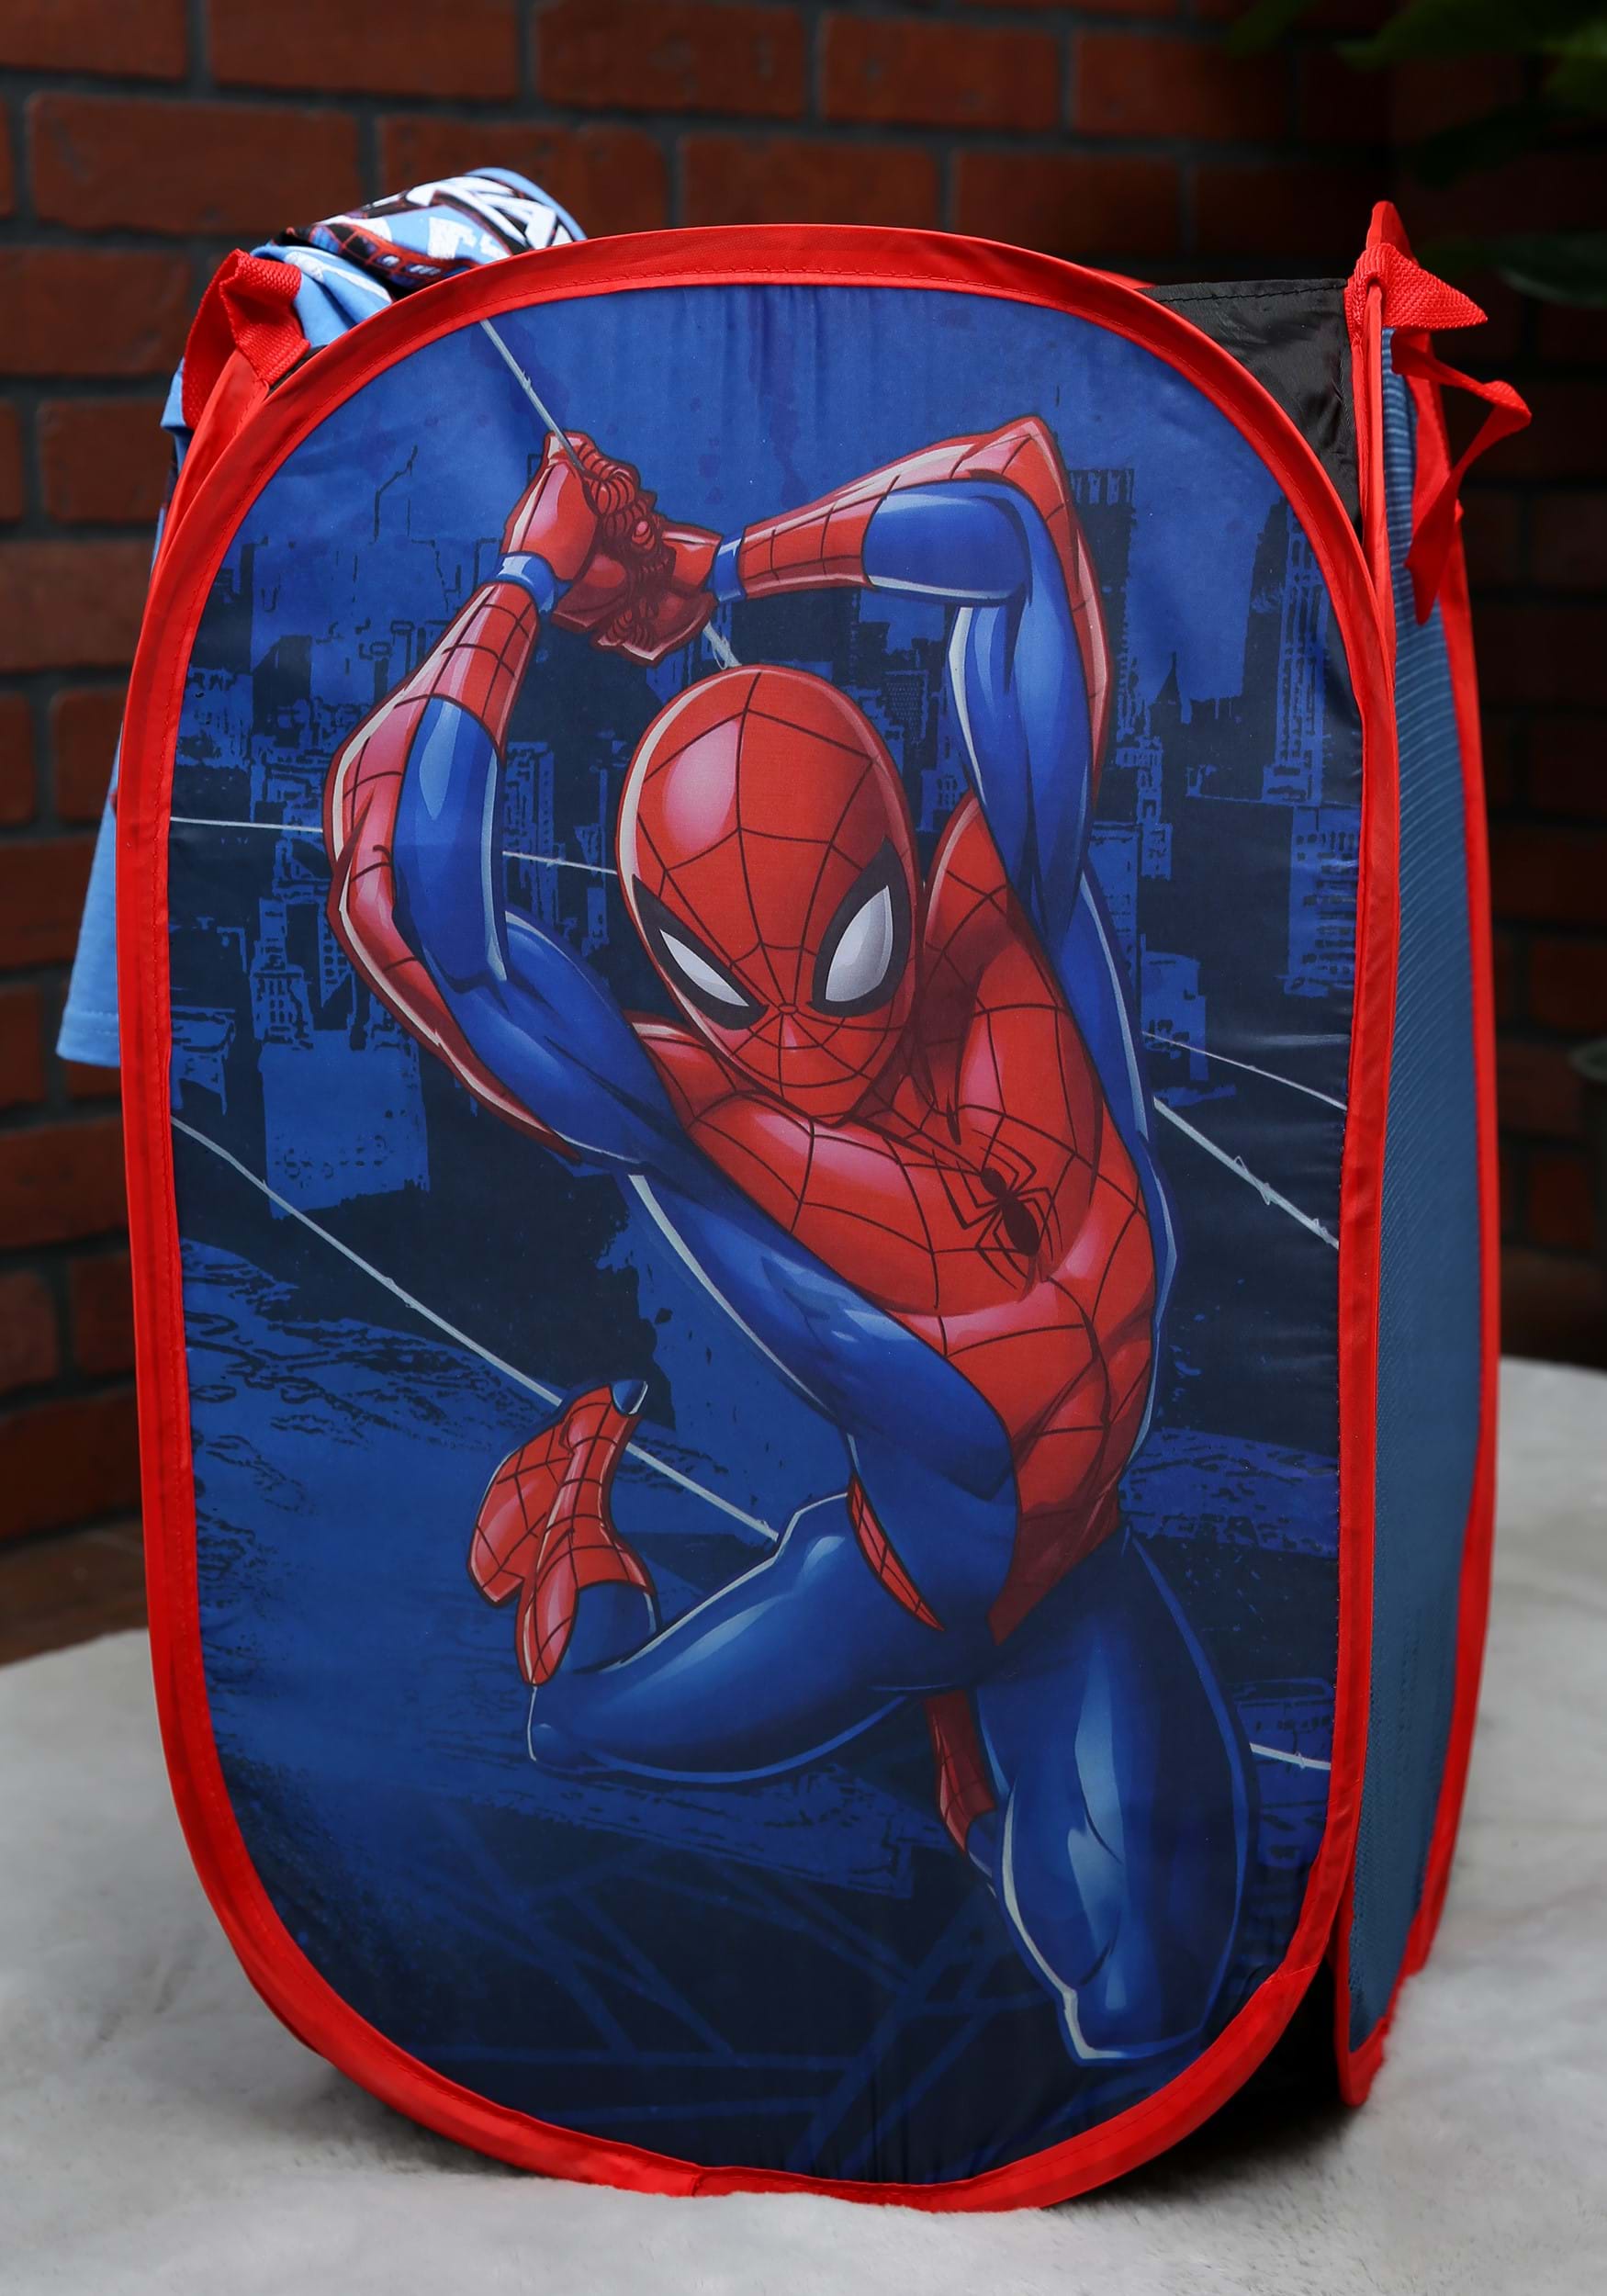 web-sling-spiderman-pop-up-hamper